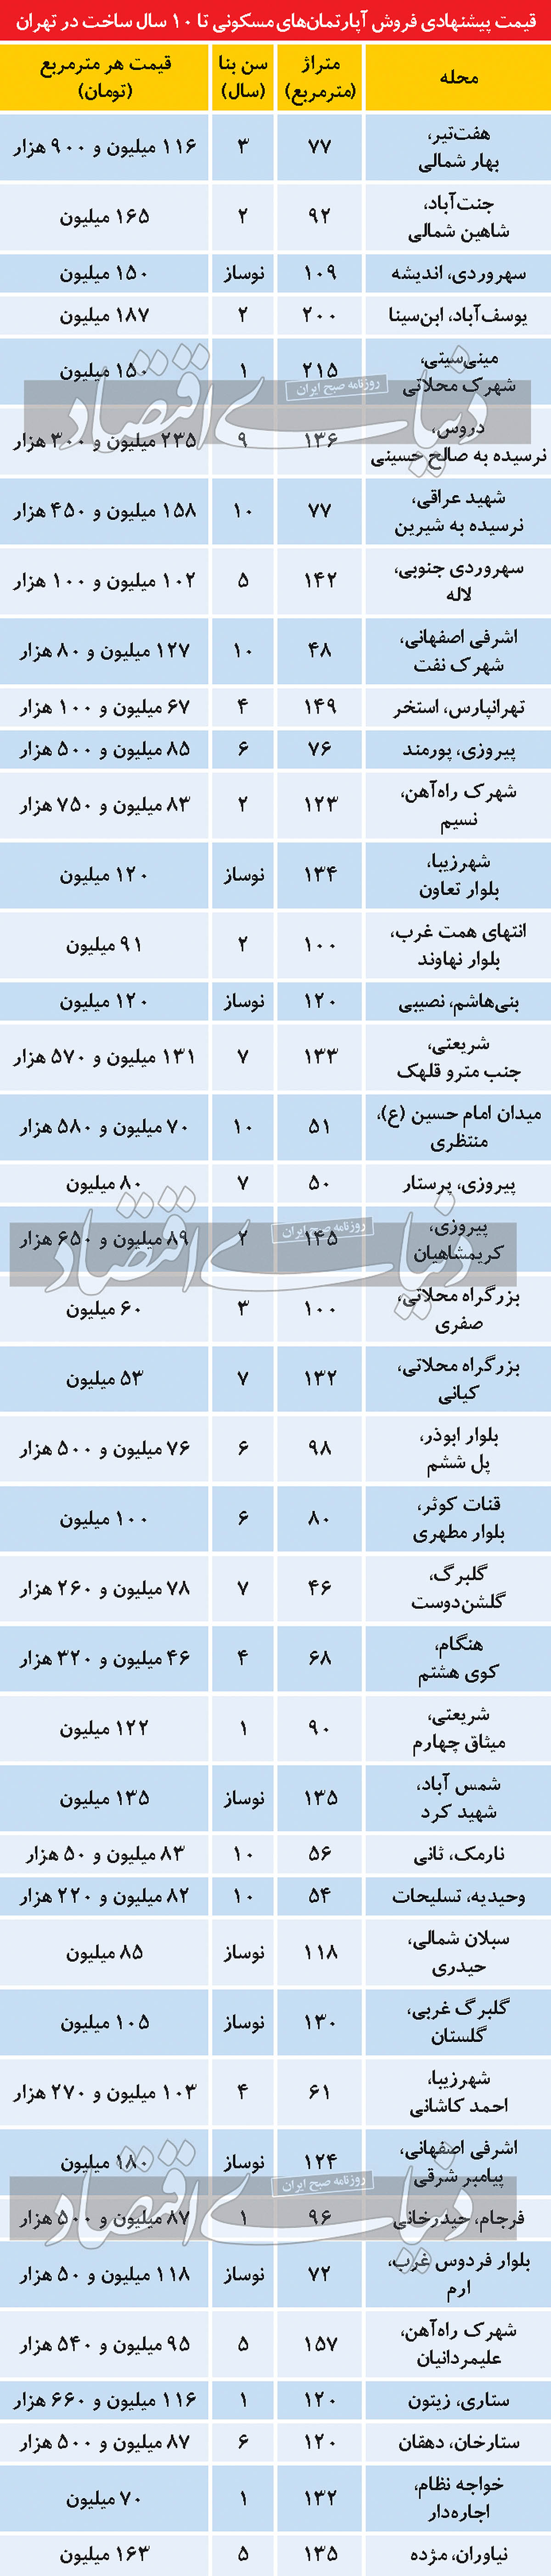 قیمت پیشنهادی فروش آپارتمان تا 10 سال ساخت در تهران/جدول